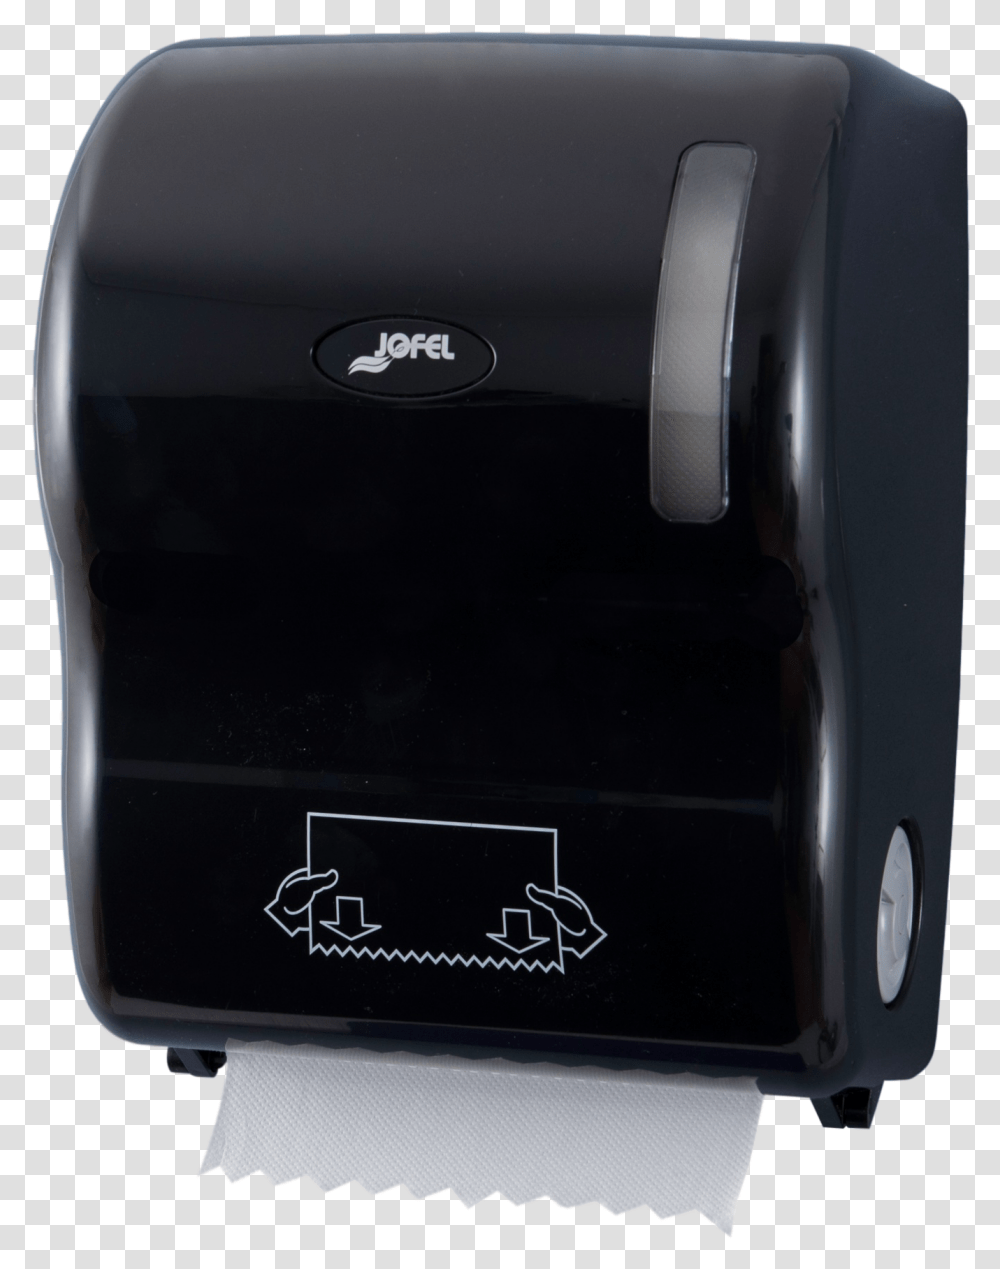 Autocut Paper Towel Dispenser Black, Appliance, Mobile Phone, Electronics, Cell Phone Transparent Png